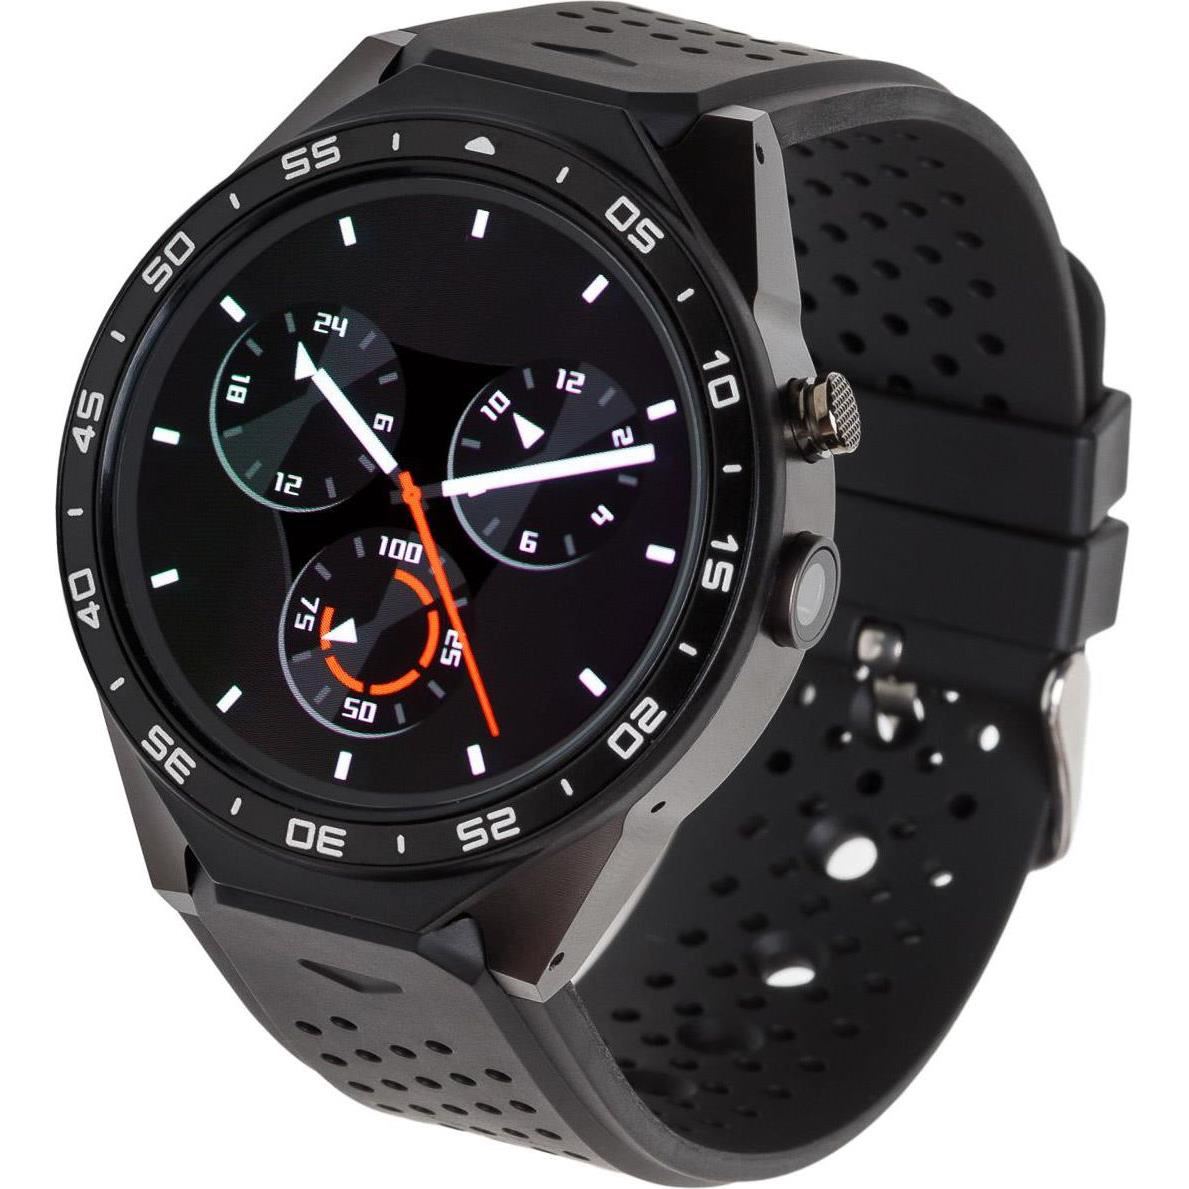 Smartwatch - Smartwatch Garett Expert SIM WiFi 3G GPS Bluetooth Negru